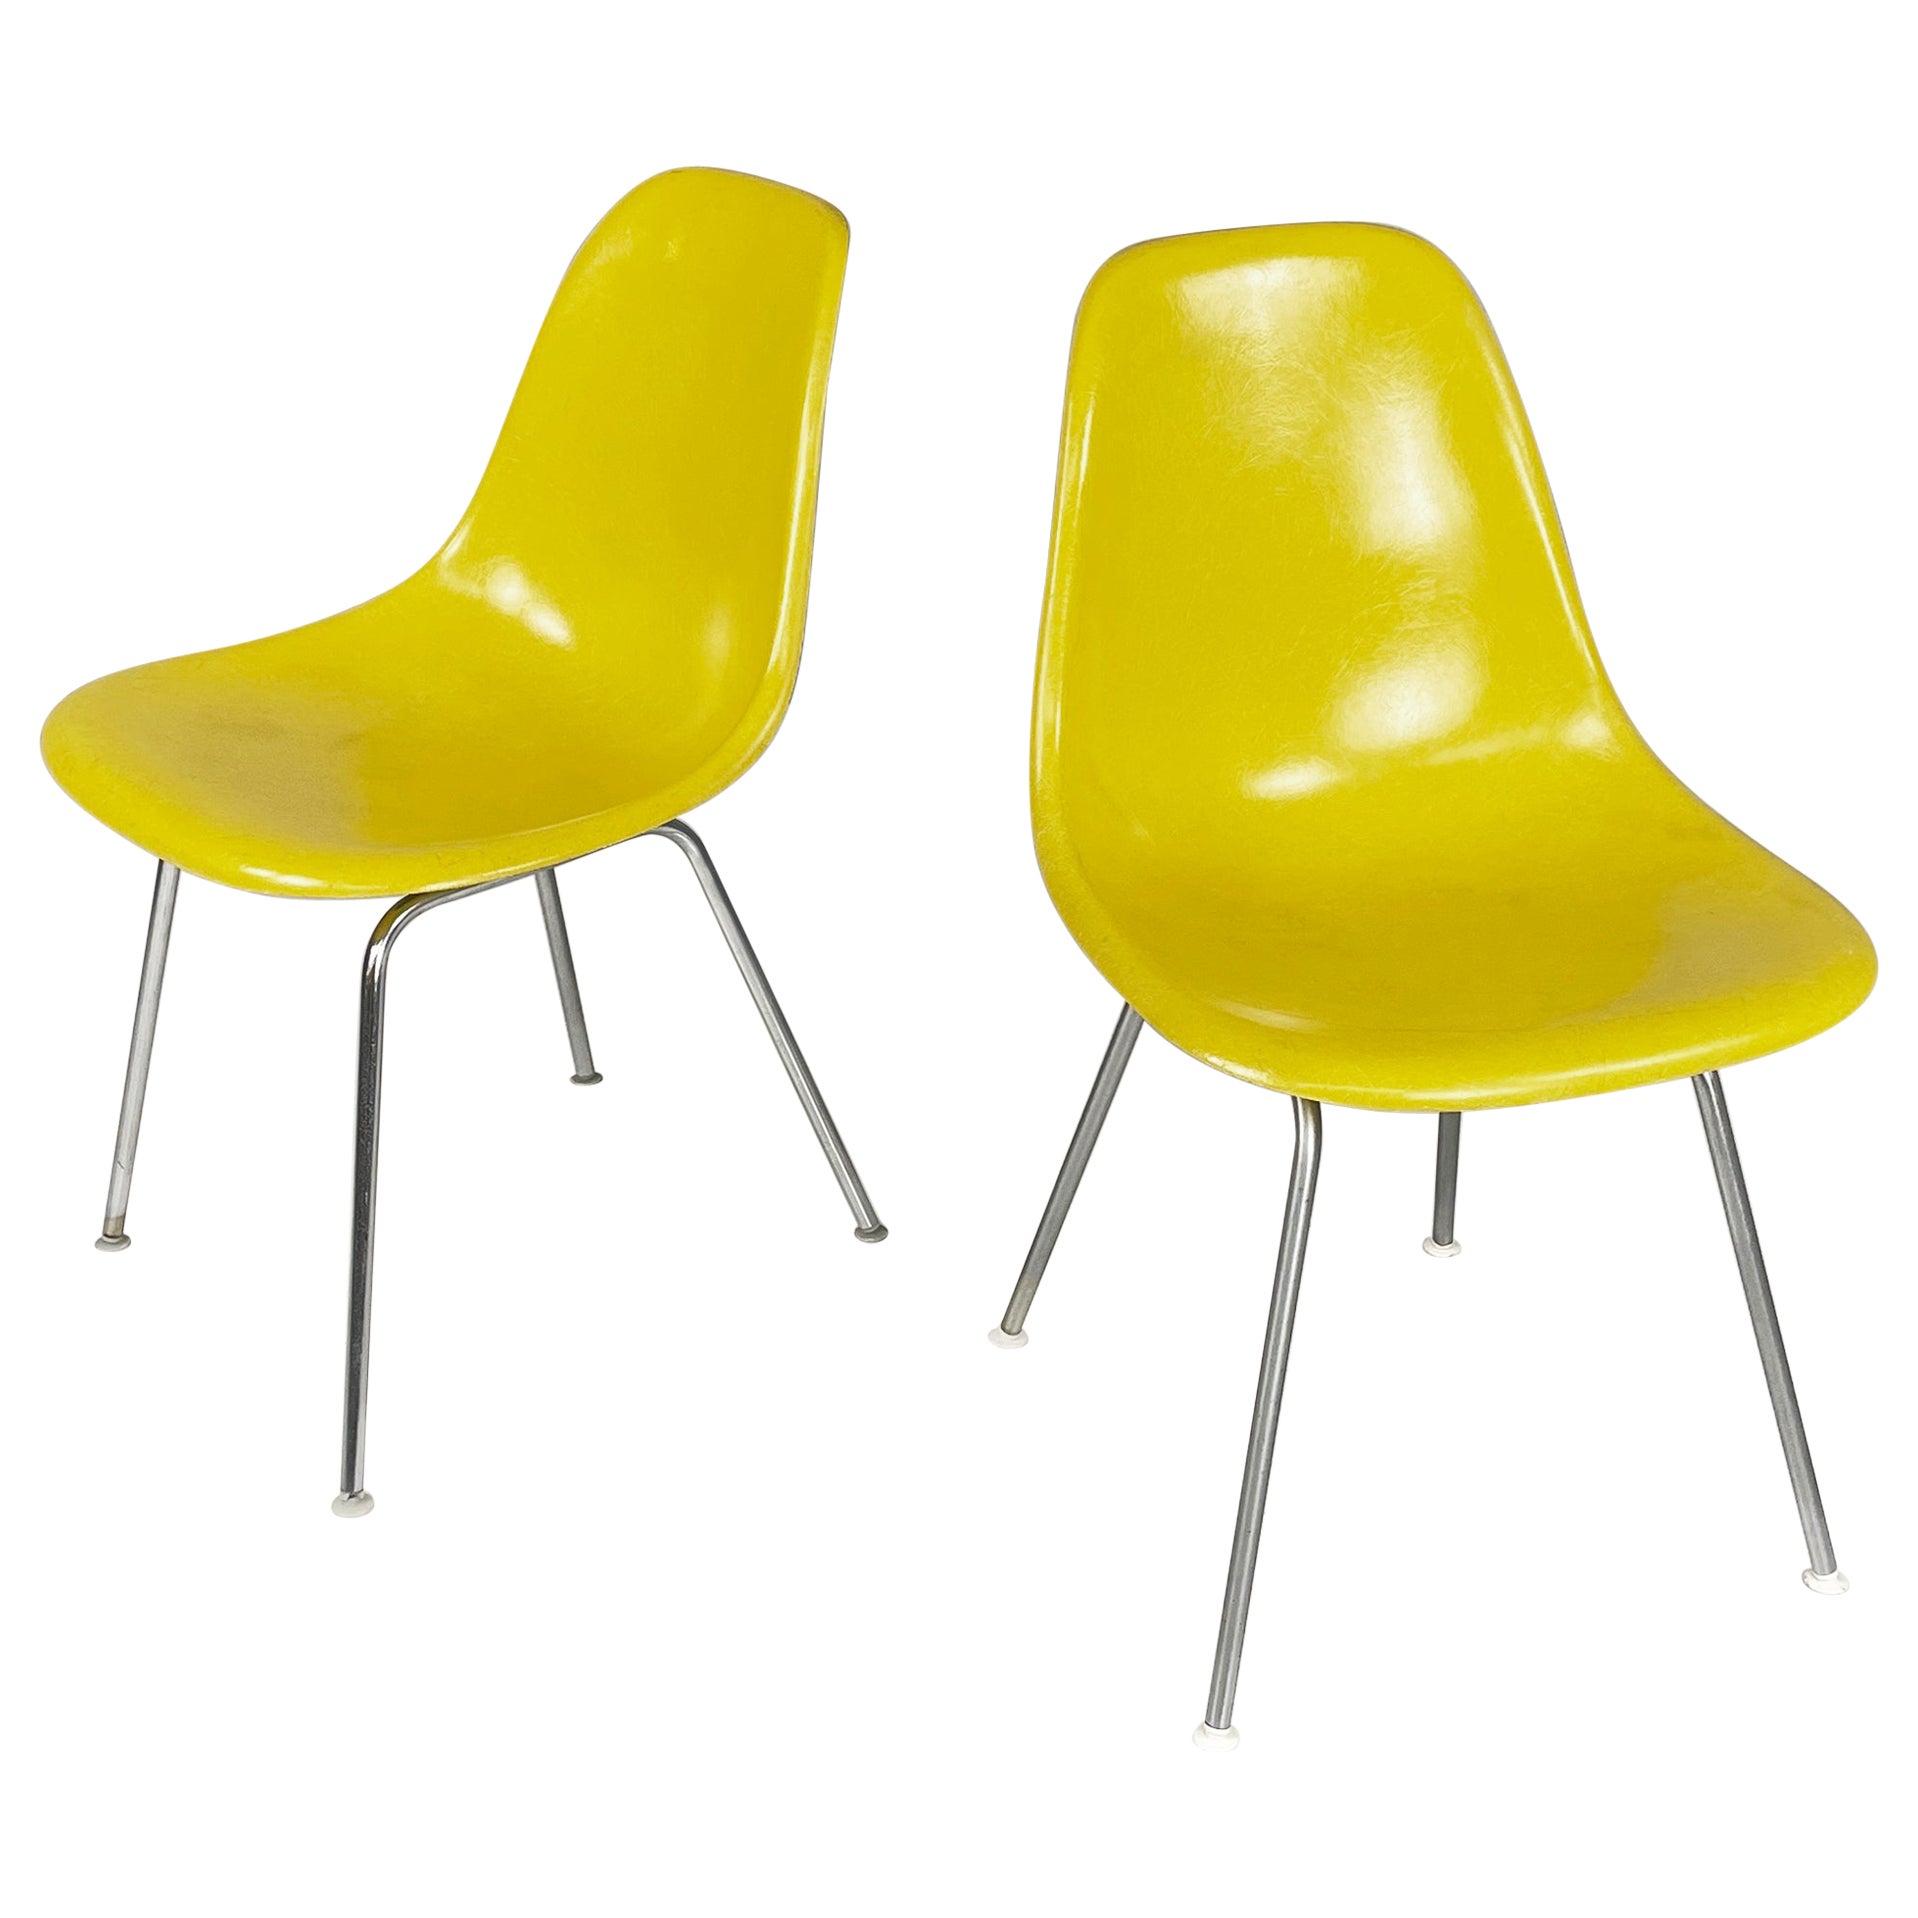 American Yellow Shell Chairs von Charles und Ray Eames für Herman Miller, 1970er Jahre